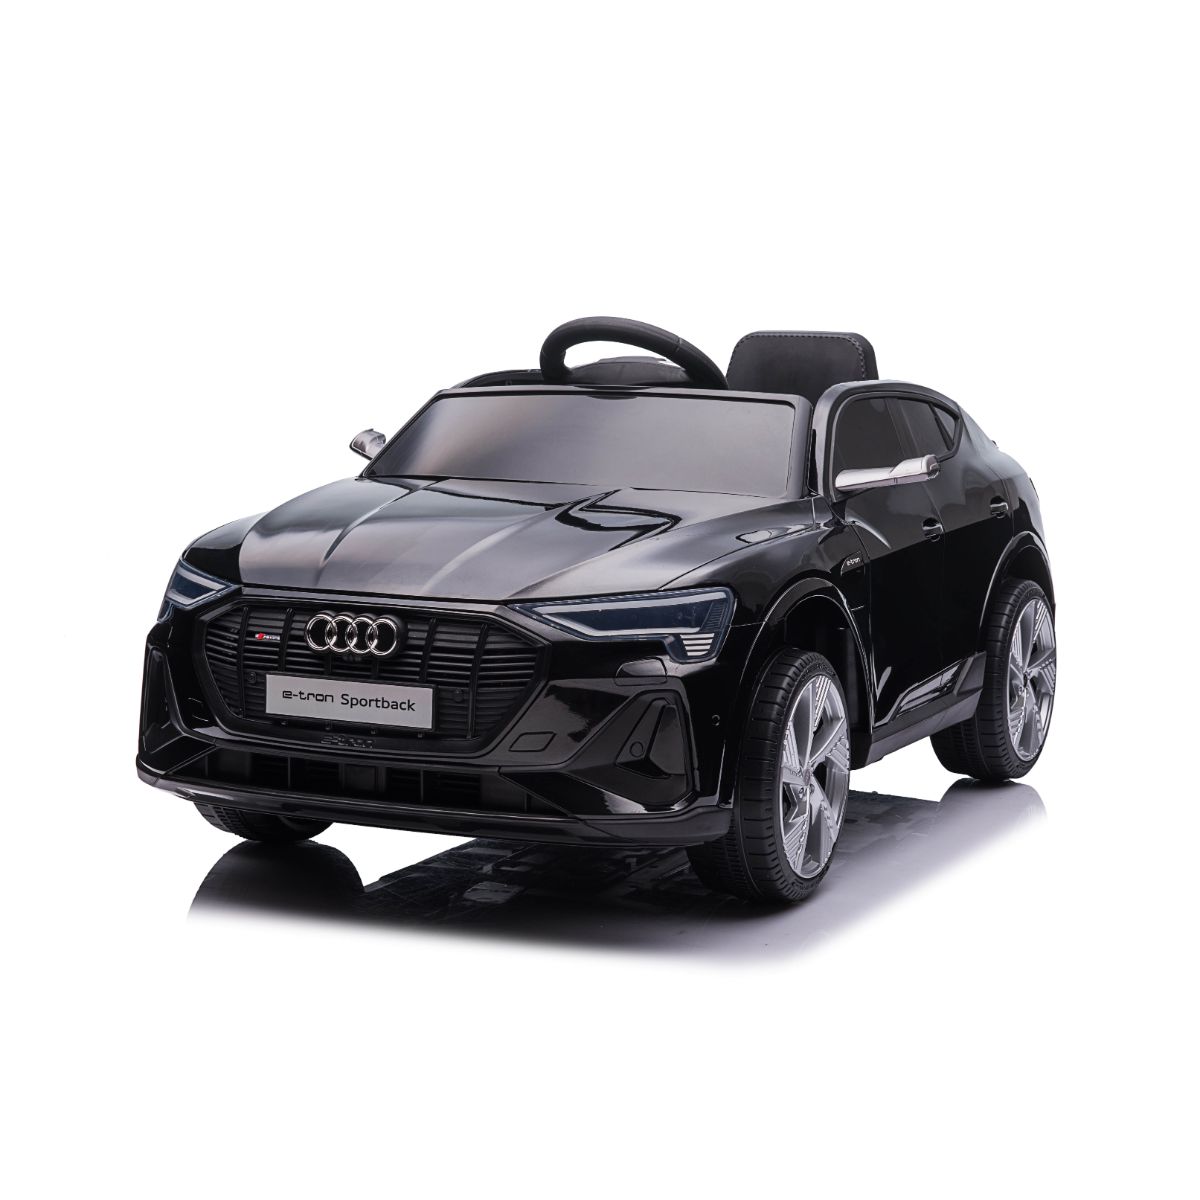 Masinuta electrica, Audi E-Tron Sport Back, negru Audi imagine 2022